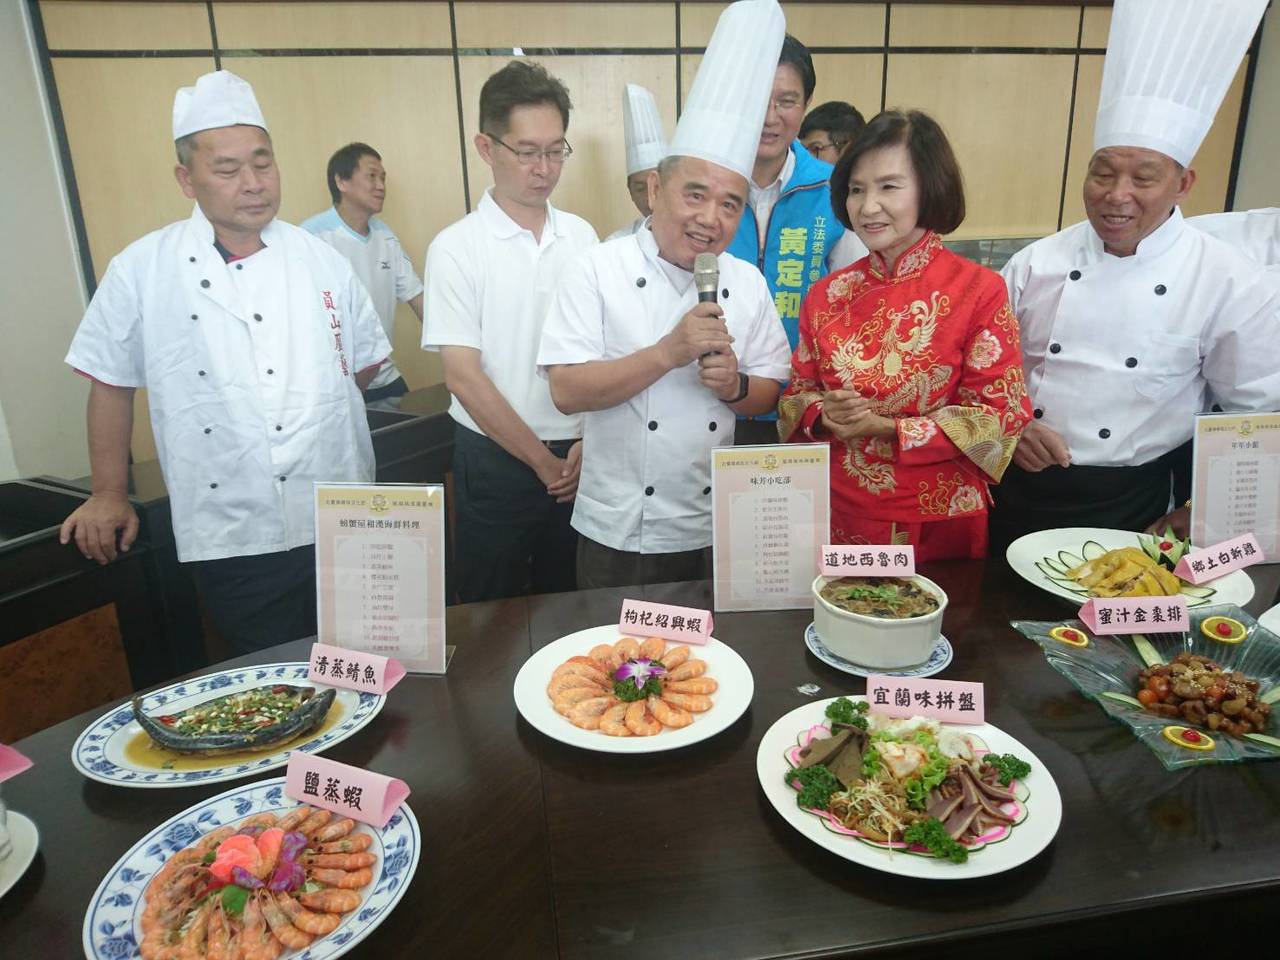 3千5海鮮餐費只要2千5 北臺灣媽祖文化節福宴限量1千桌